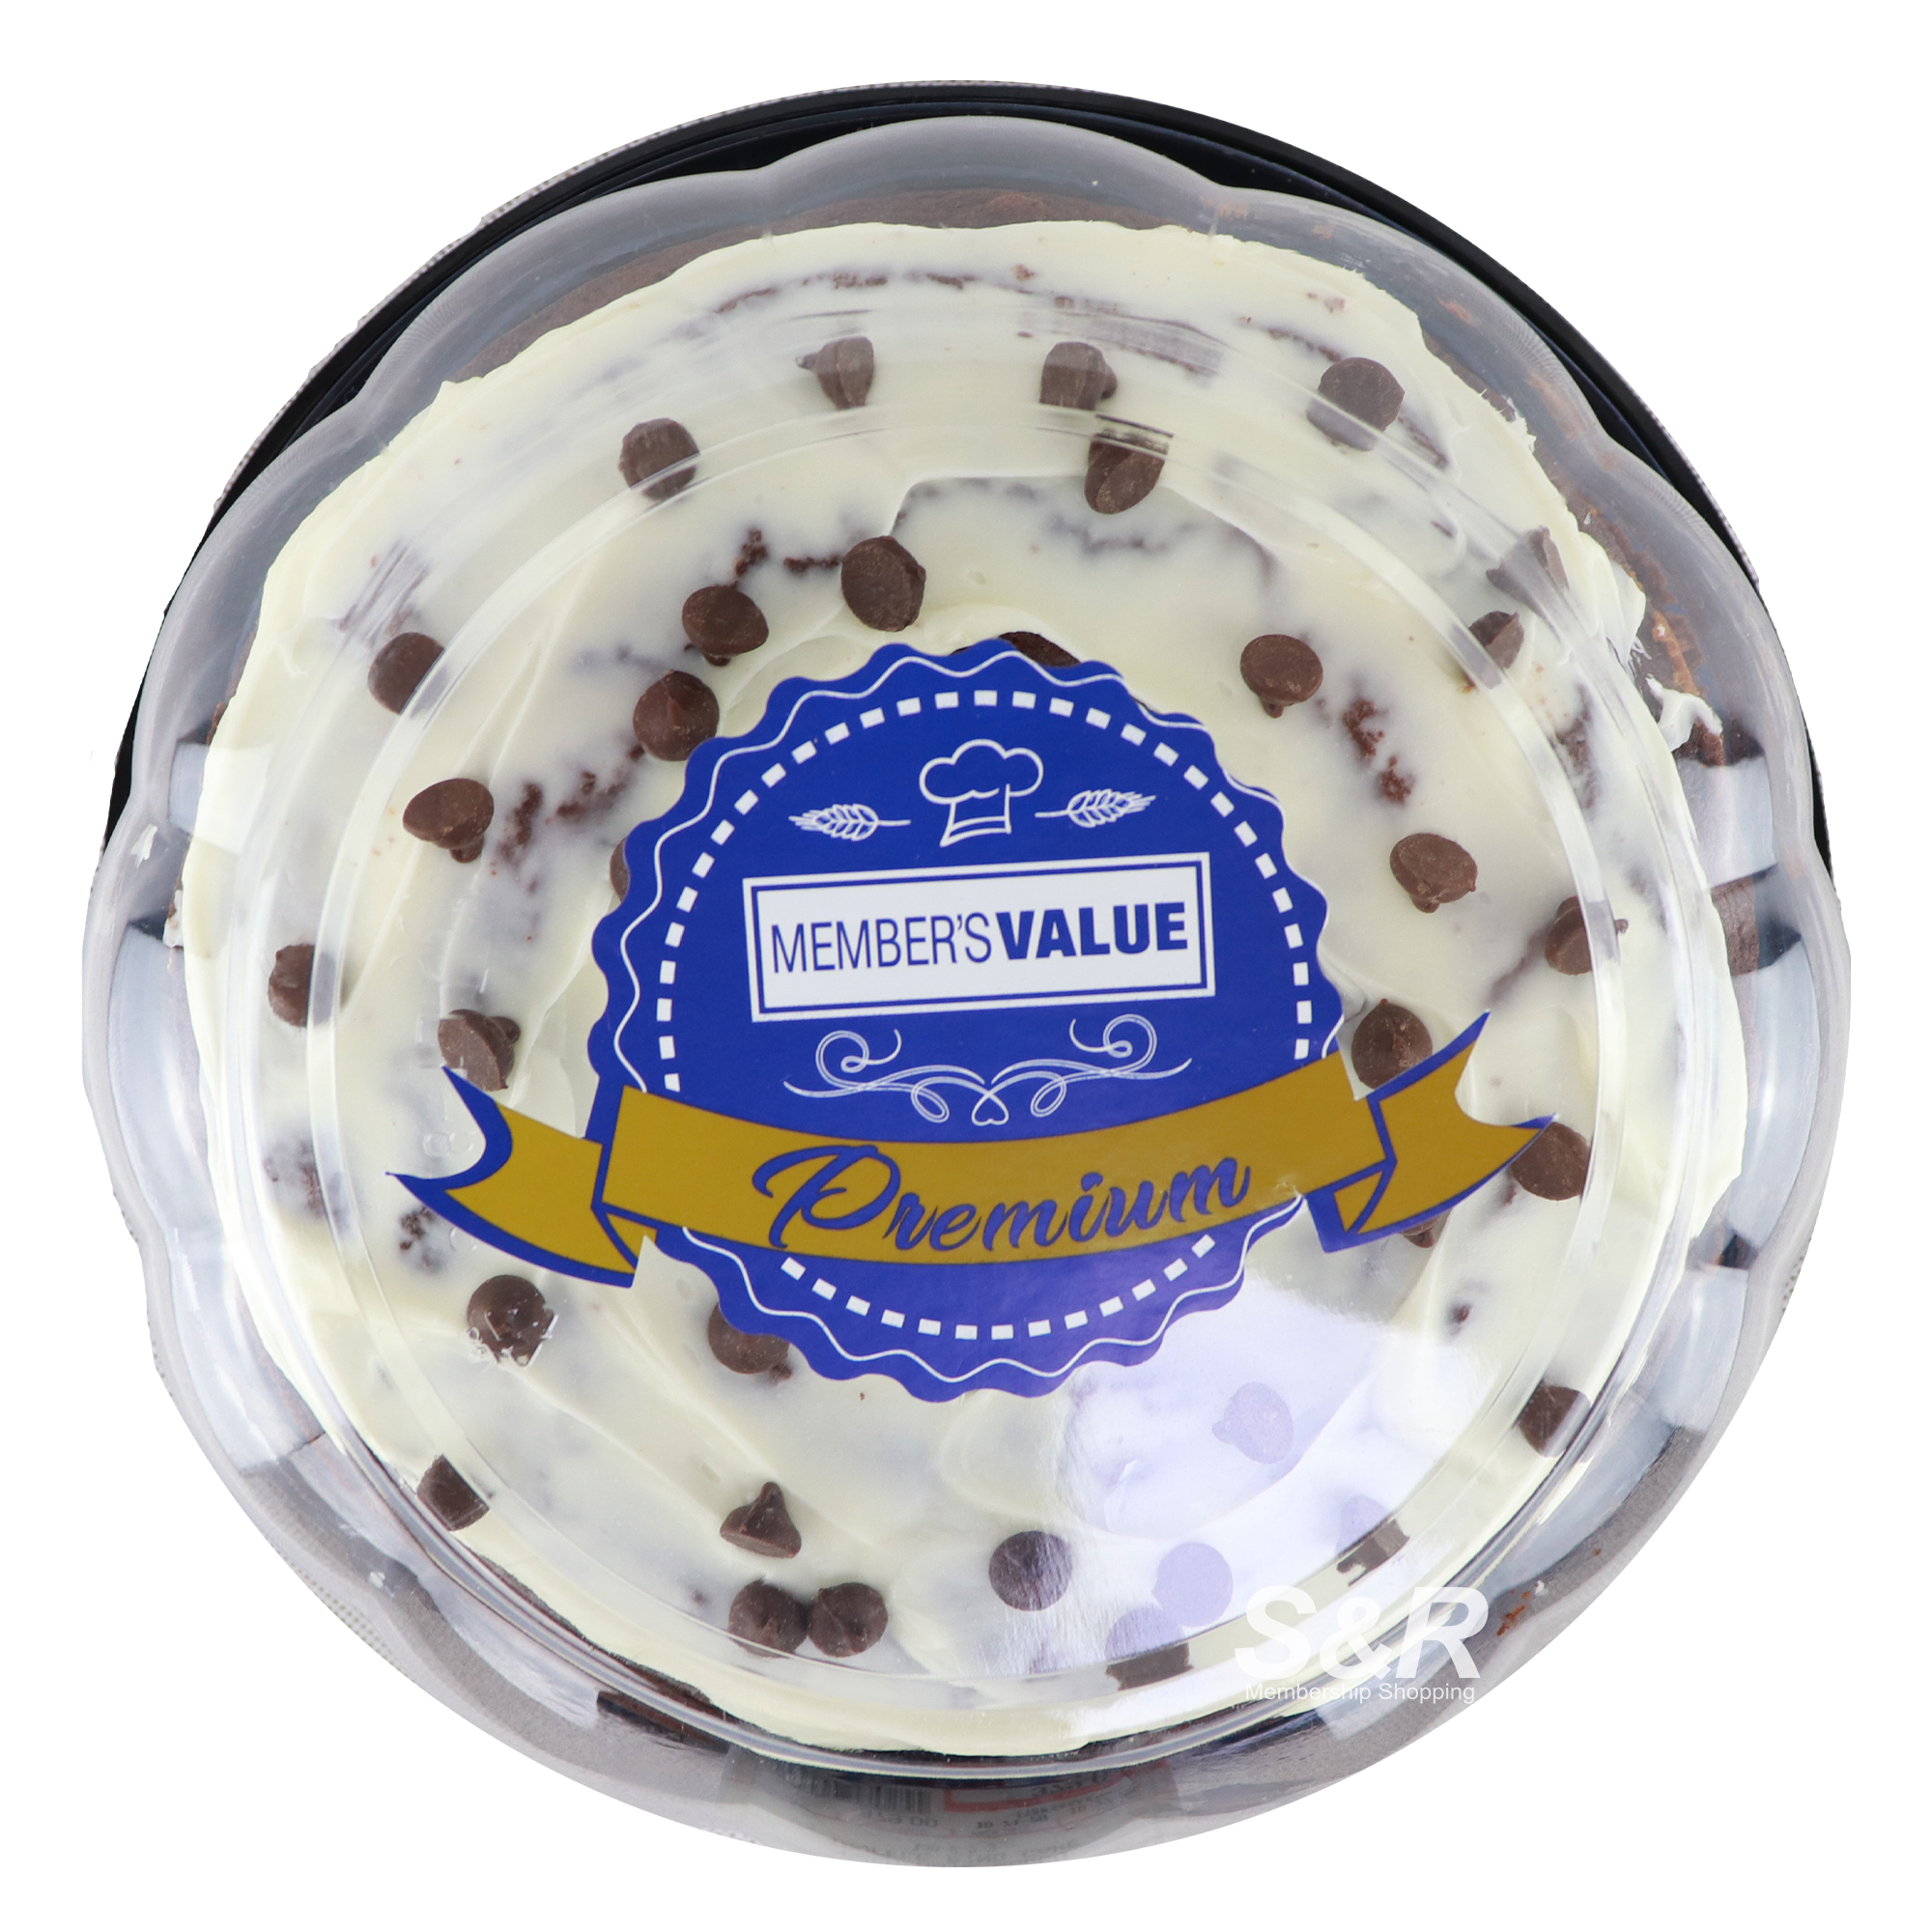 Member's Value Premium White Choco Truffle Ring Cake